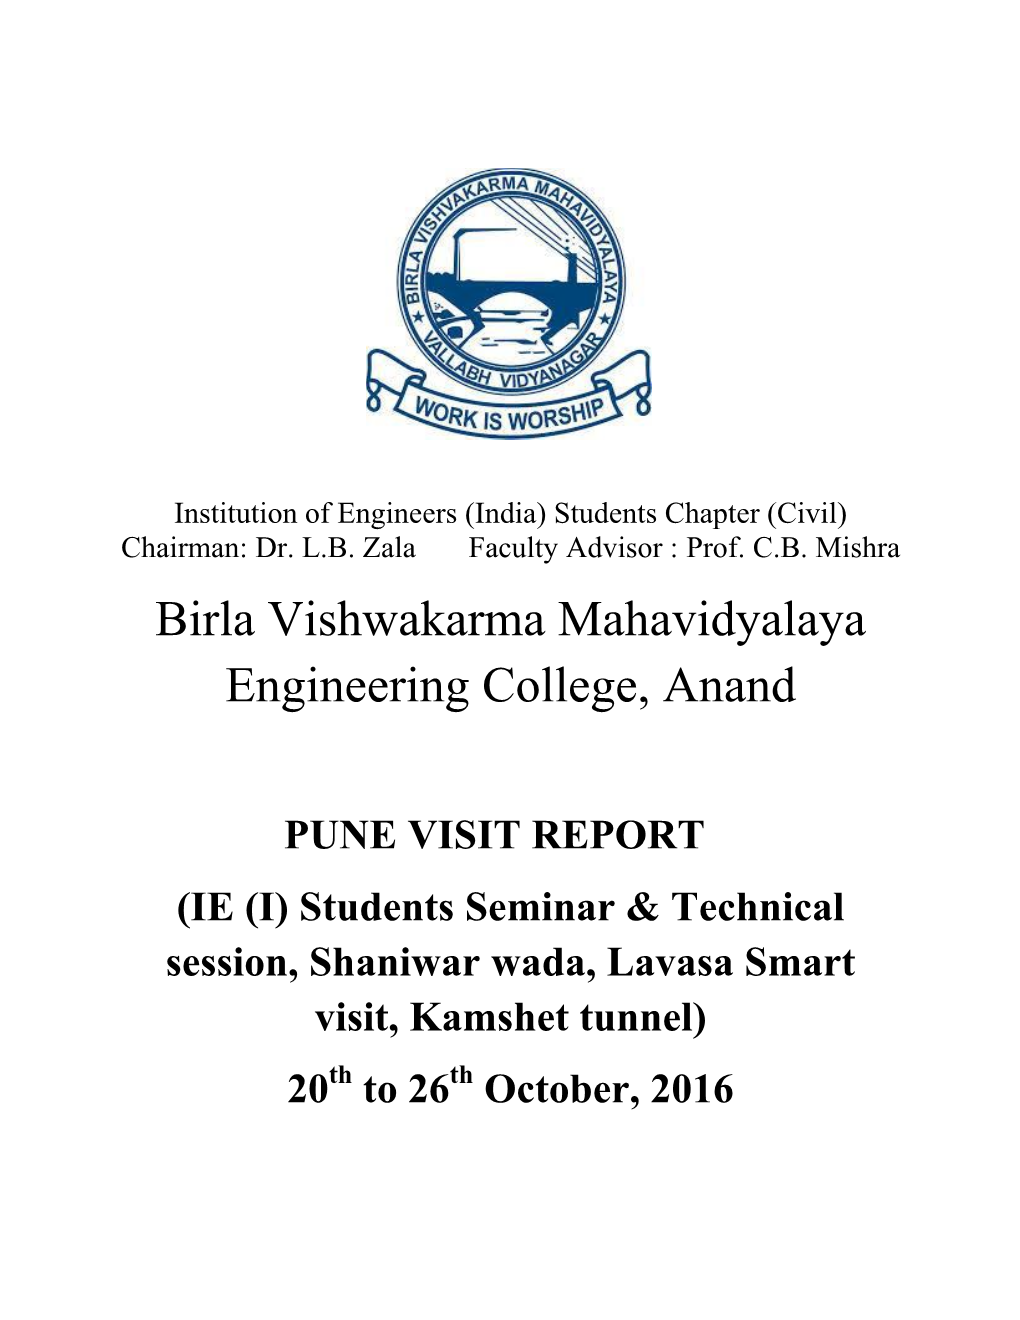 Birla Vishwakarma Mahavidyalaya Engineering College, Anand